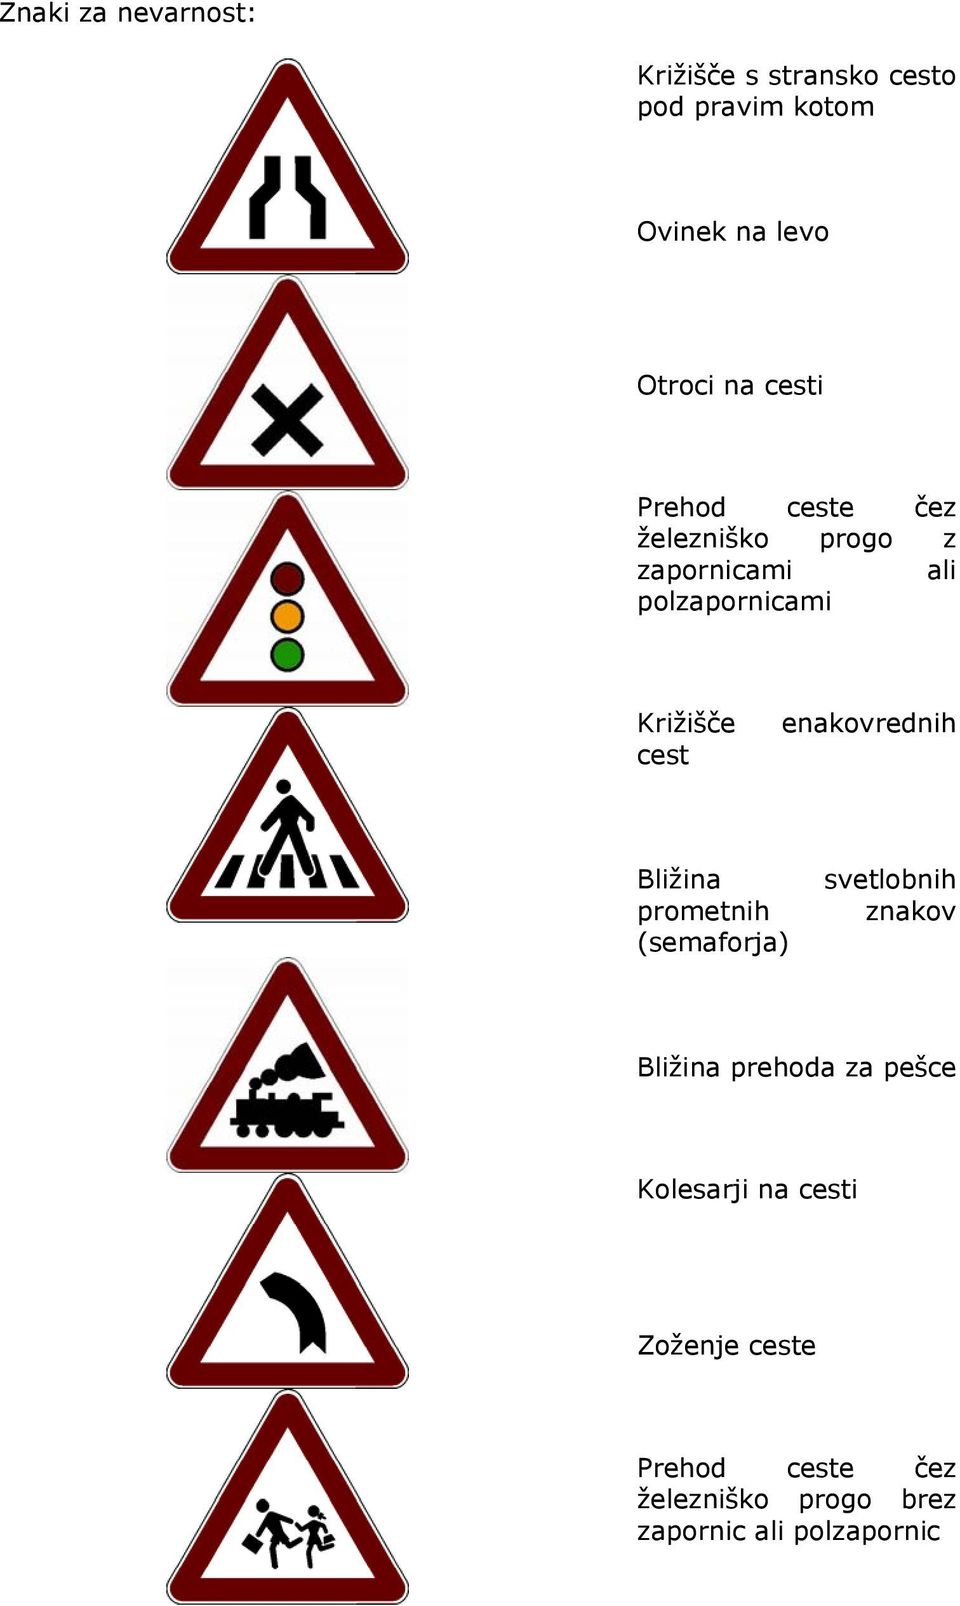 enakovrednih Bližina prometnih (semaforja) svetlobnih znakov Bližina prehoda za pešce